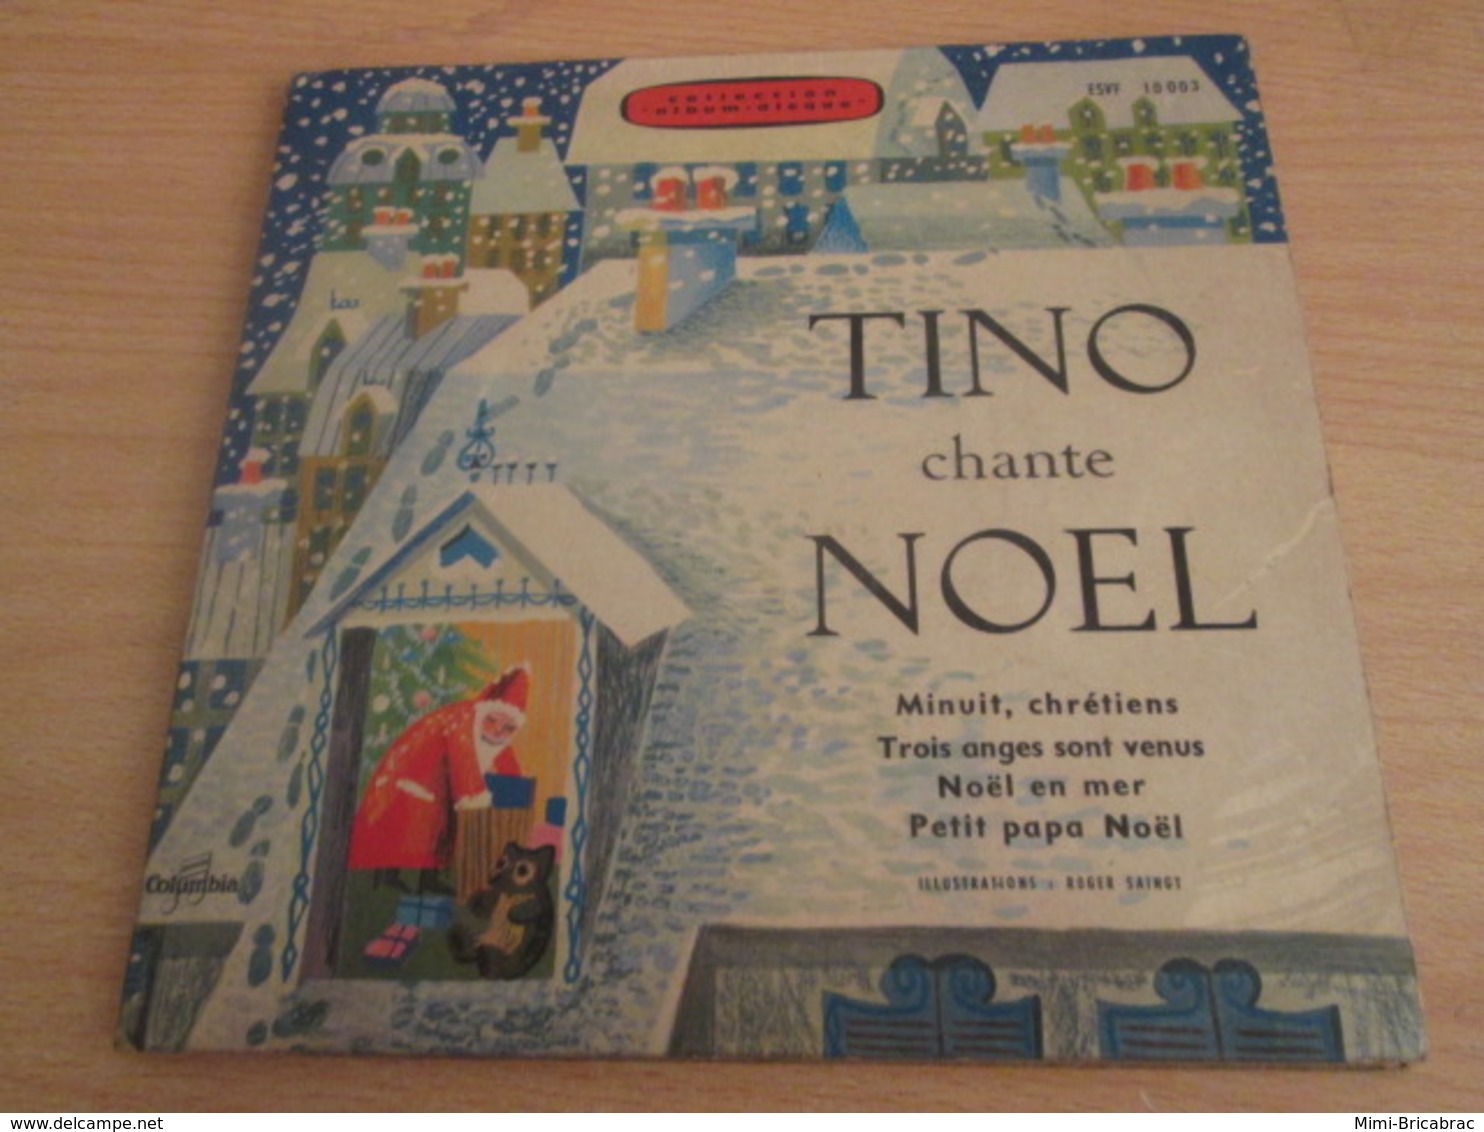 DISQUE EP 4T VINYLE 45 T , TINO ROSSI CHANTE NOEL , MINUIT CHRETIENS + NOEL EN MER + PETIT PAPA NOEL Etc - Christmas Carols